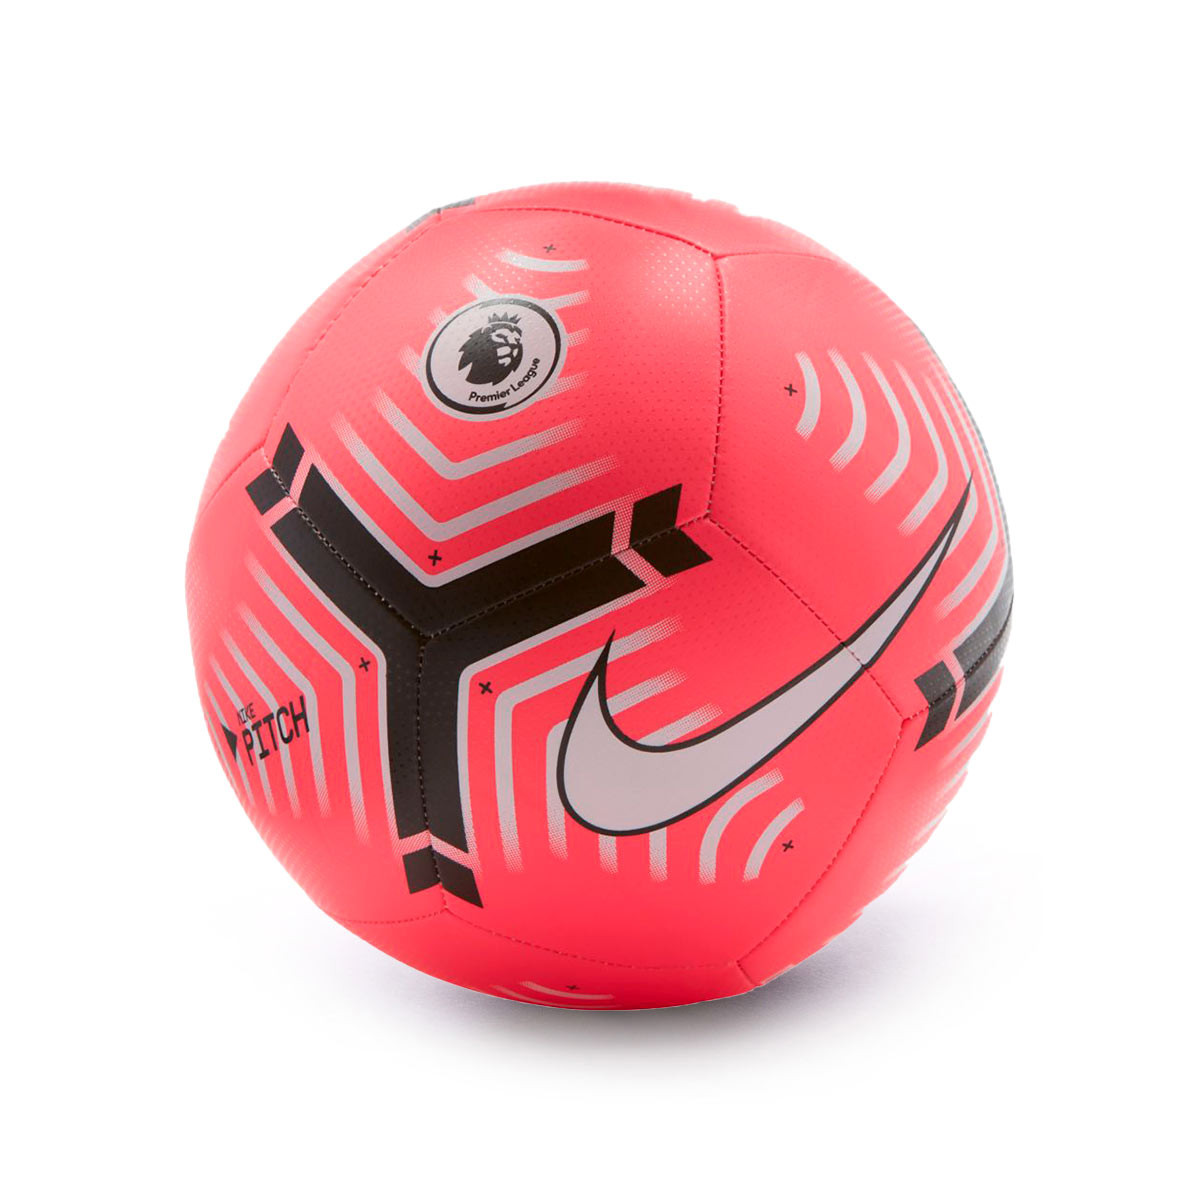 Ball Nike Premier League Pitch 2020 